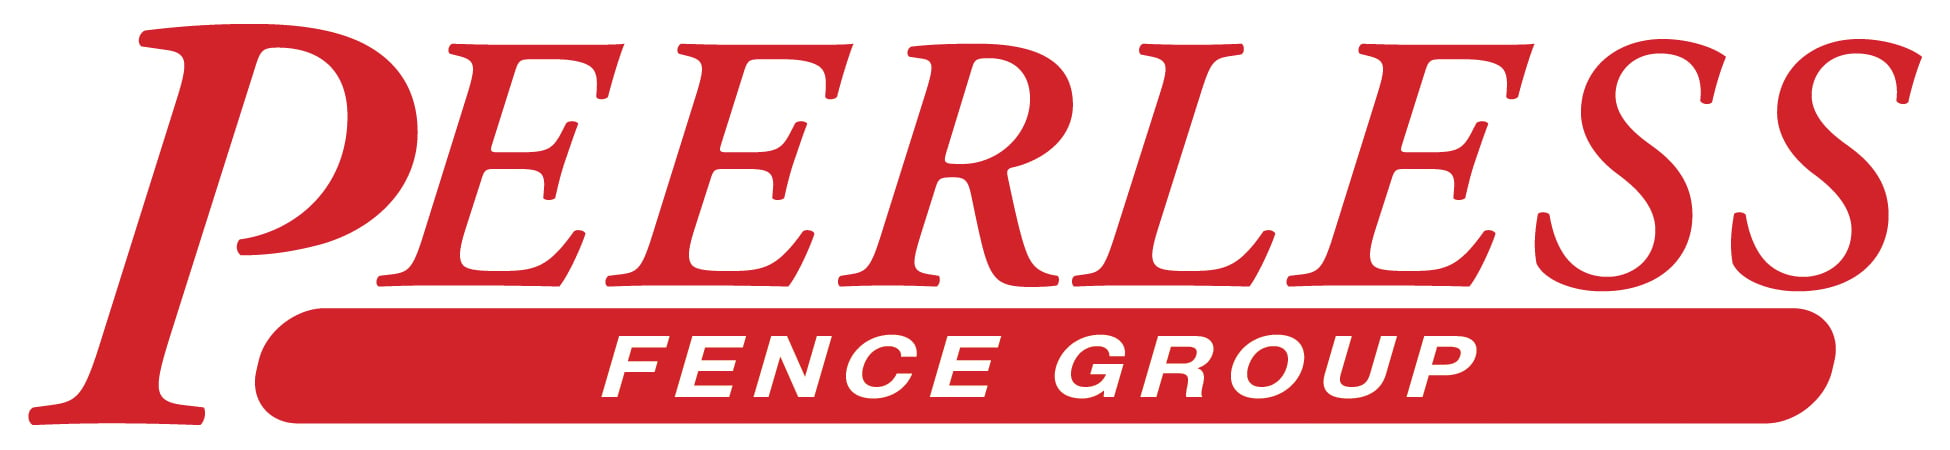 Peerless Fence Logo